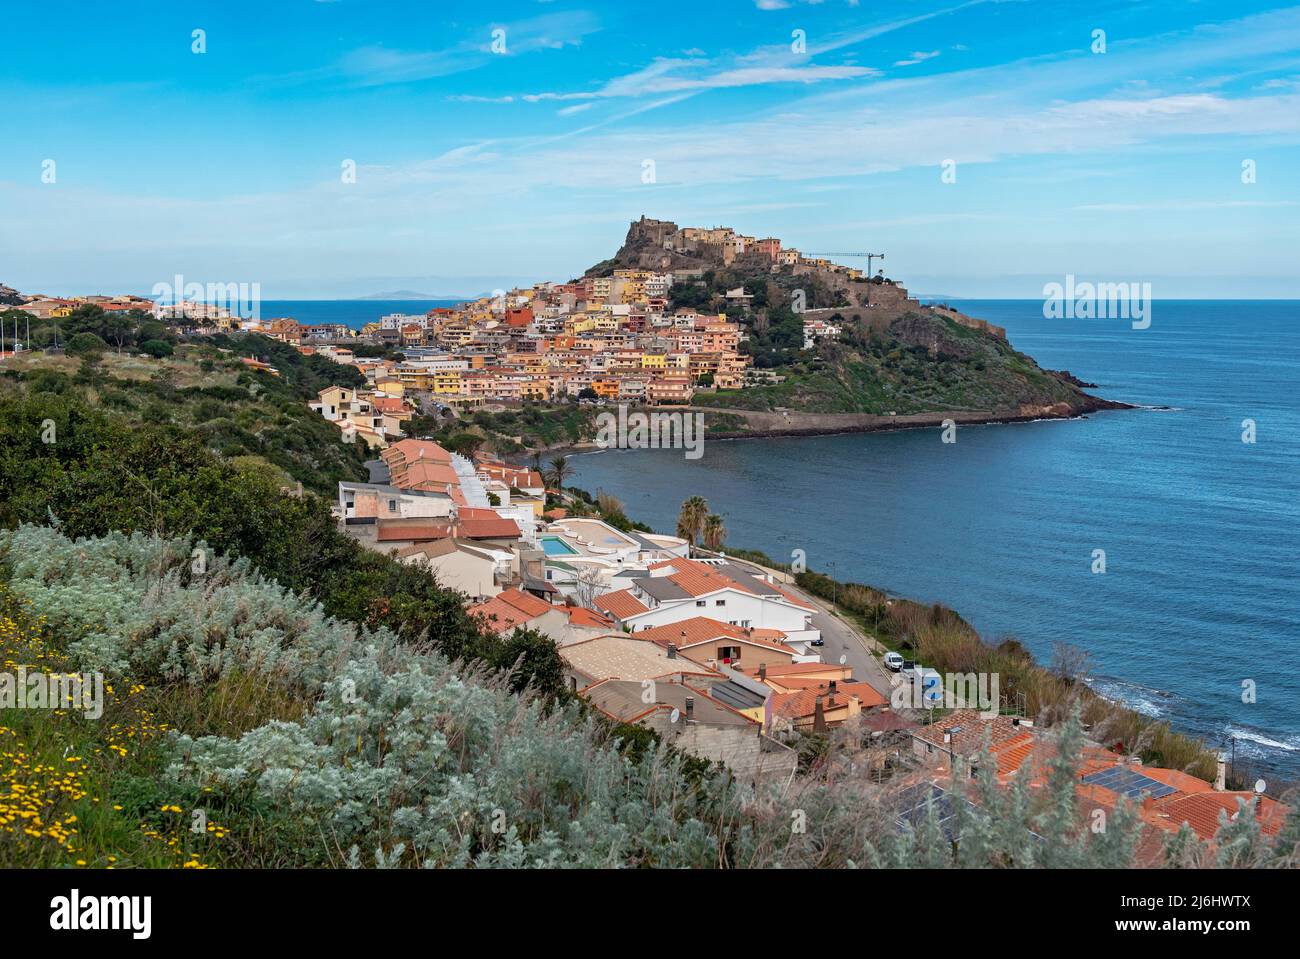 Castelsardo, Sardinia, Italy Stock Photo